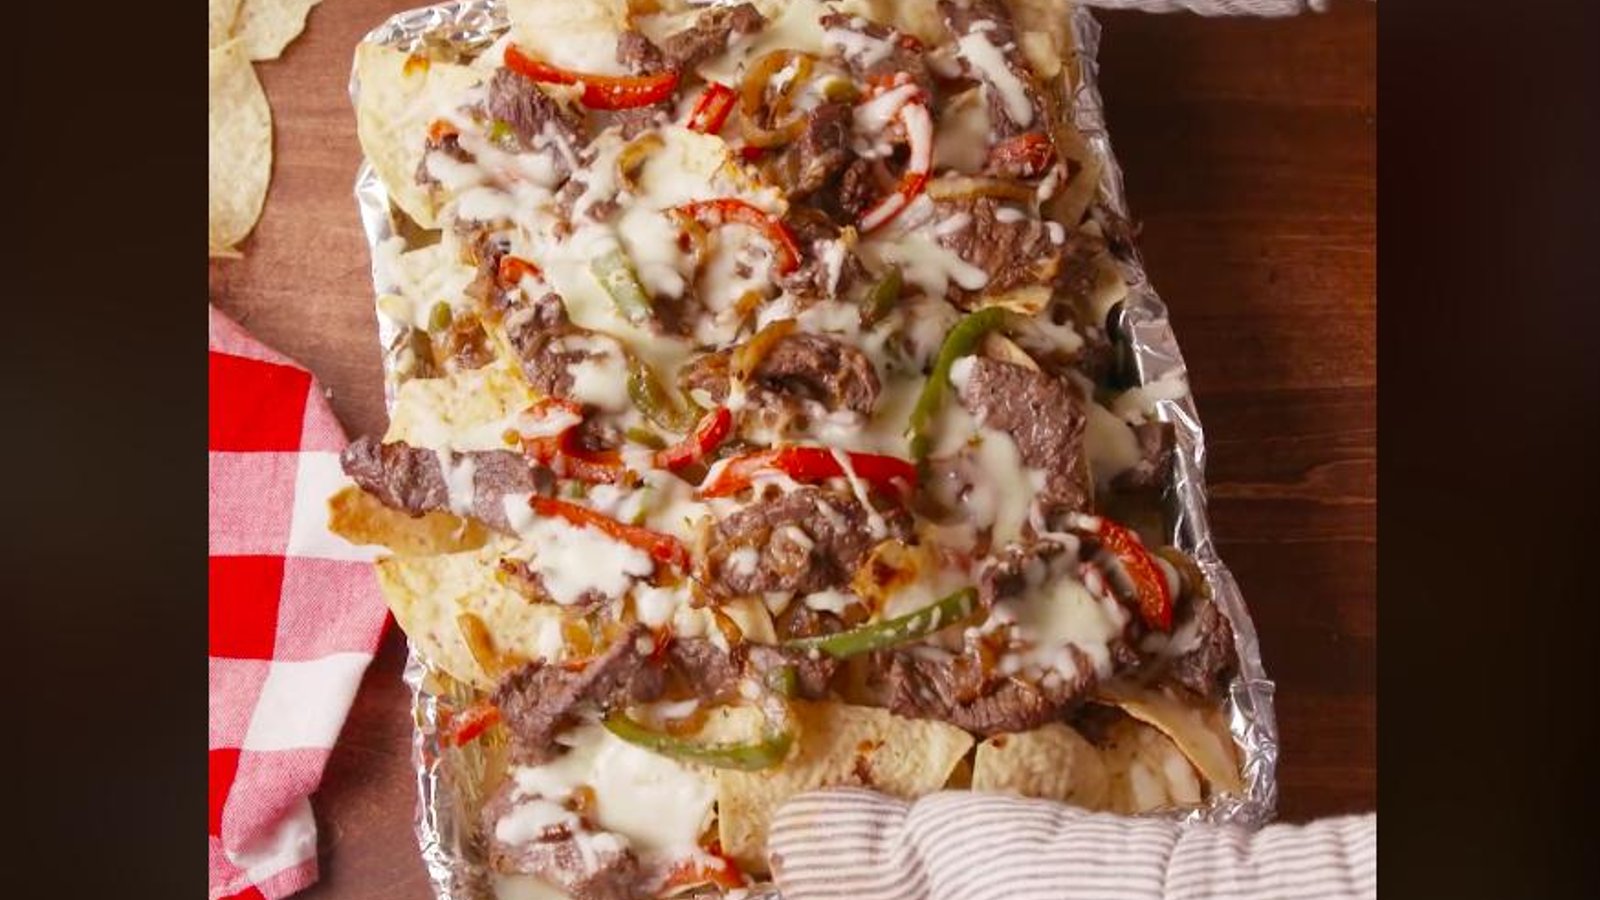 Les meilleurs nachos gratinés au steak philly que vous aurez mangés